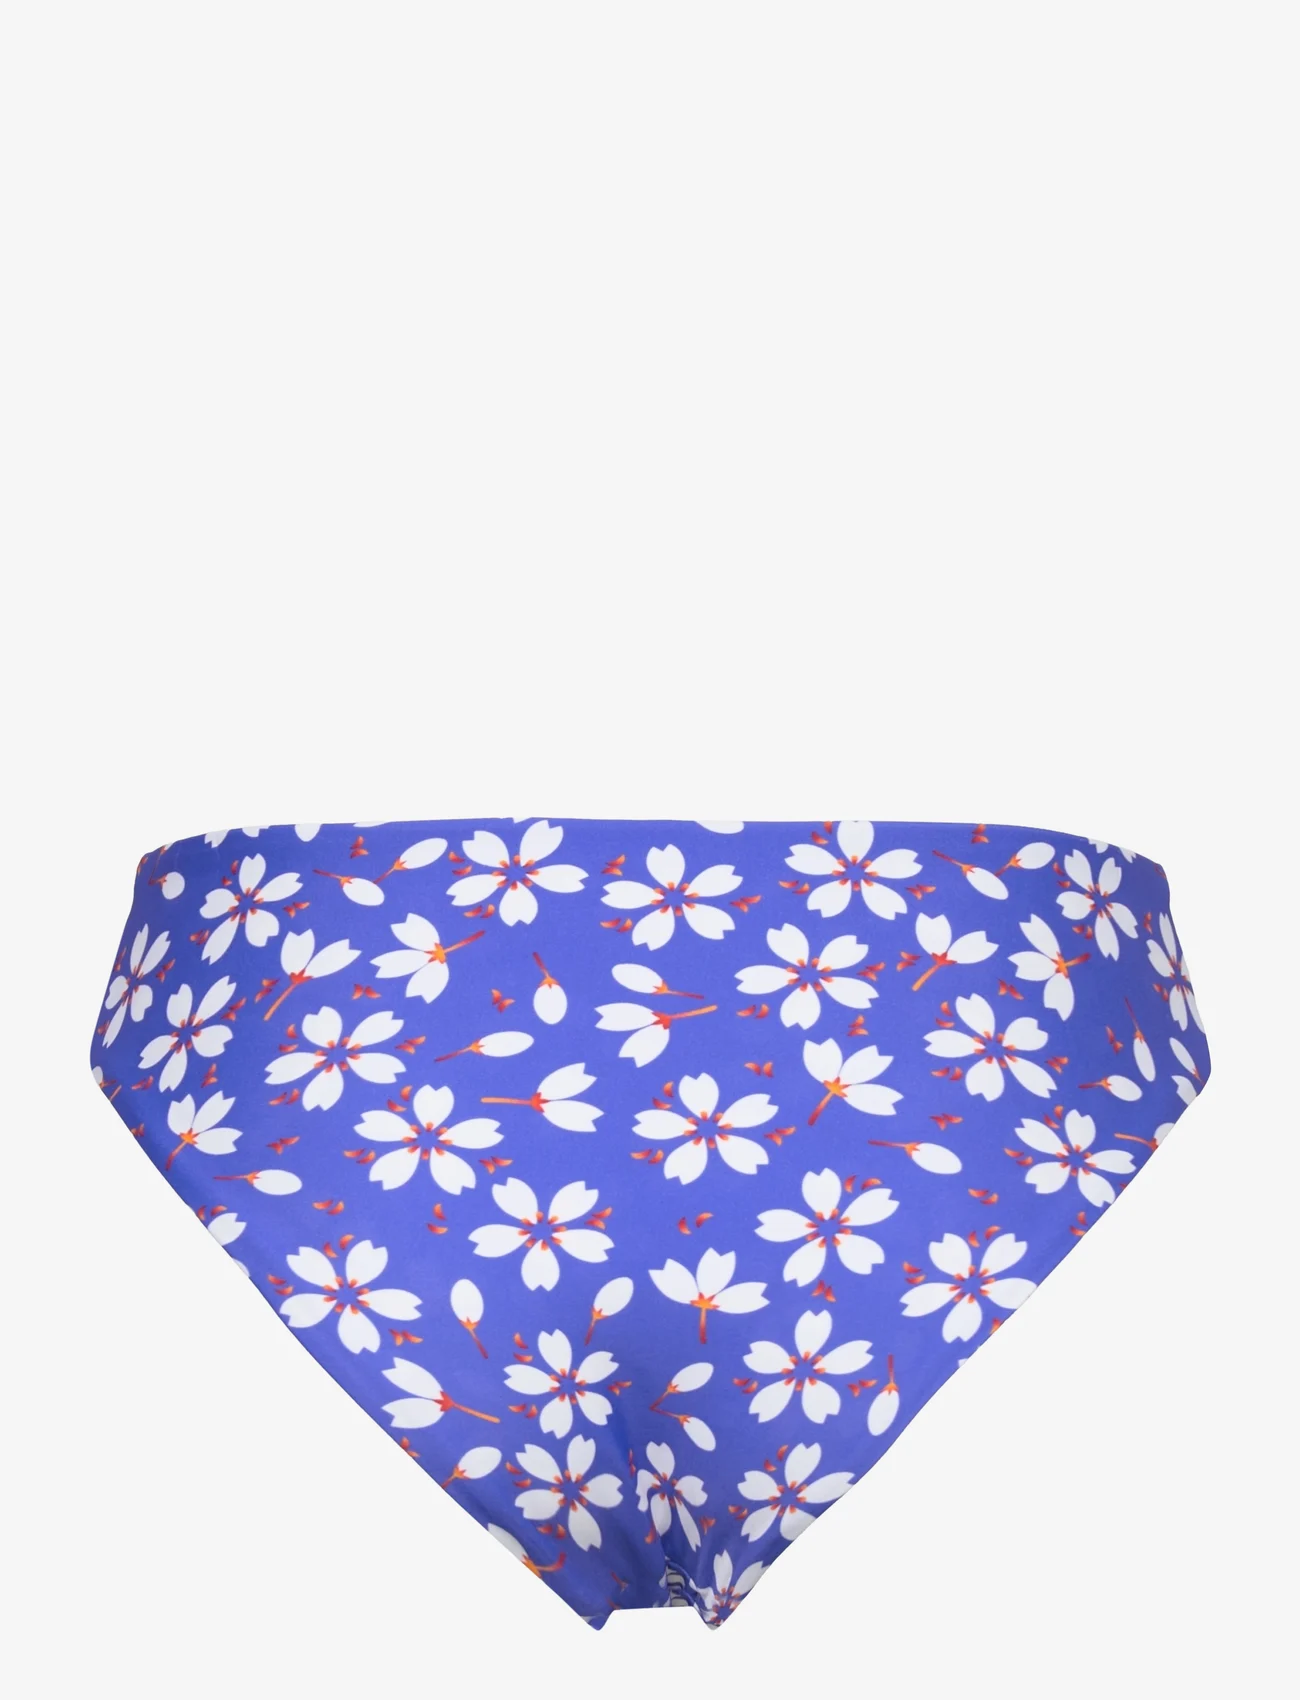 Missya - Lucca tai - bikini briefs - clear blue - 1